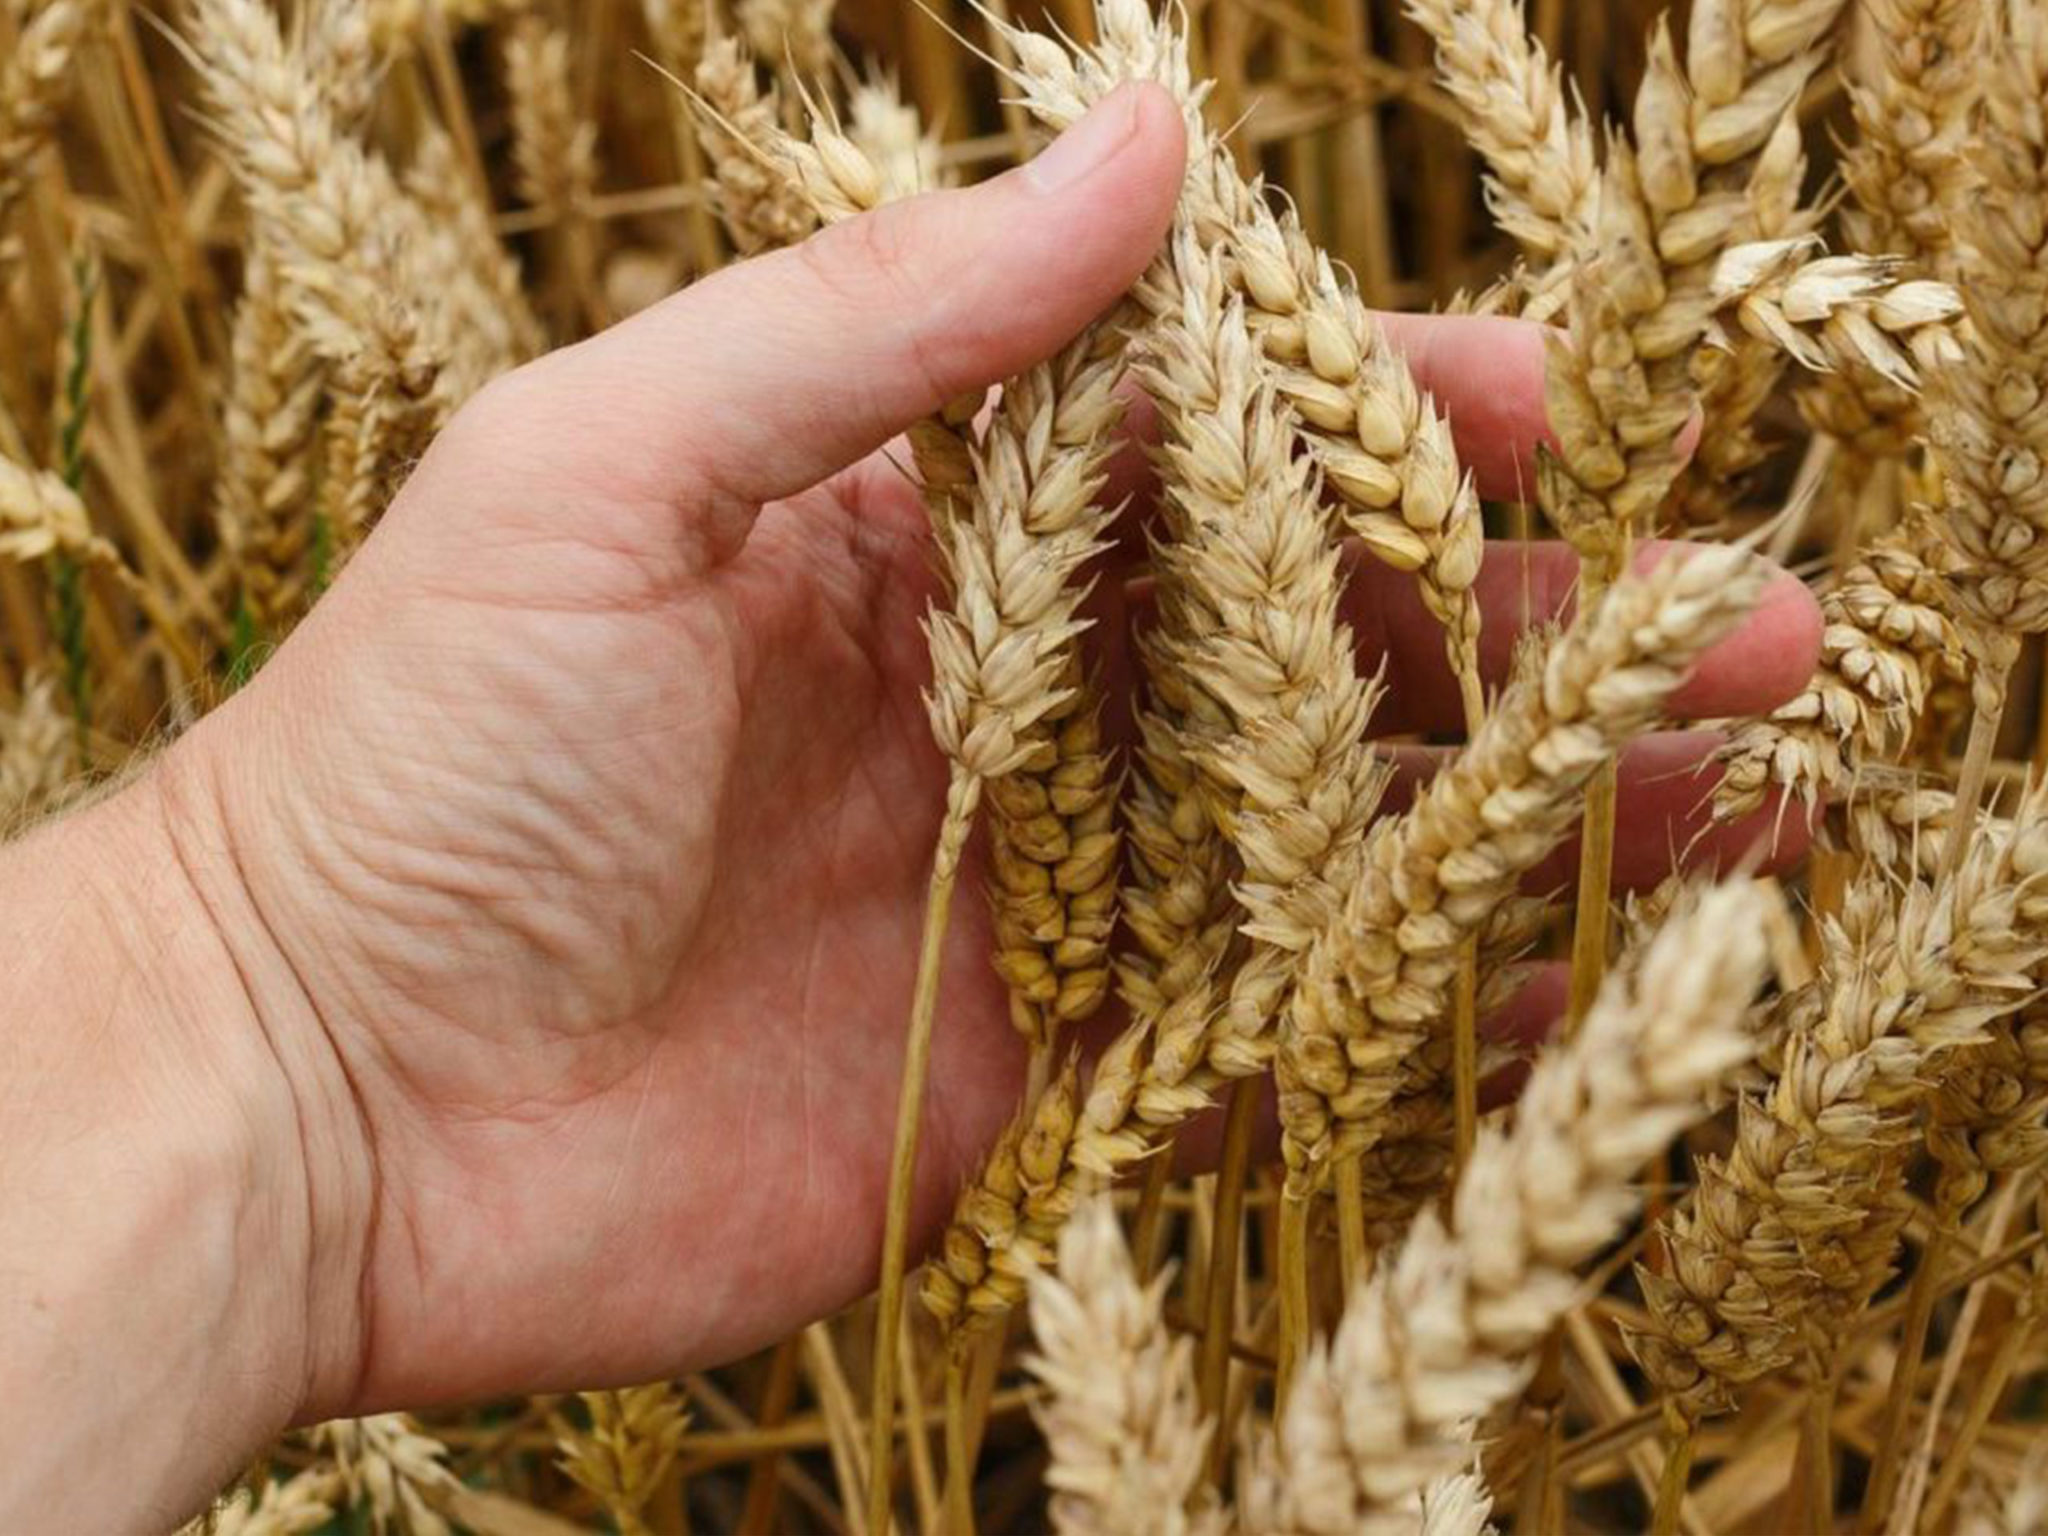 Trong tự nhiên, Azelaic acid được tìm thấy ở các loại ngũ cốc như lúa mì, lúa mạch, lúa mạch đen